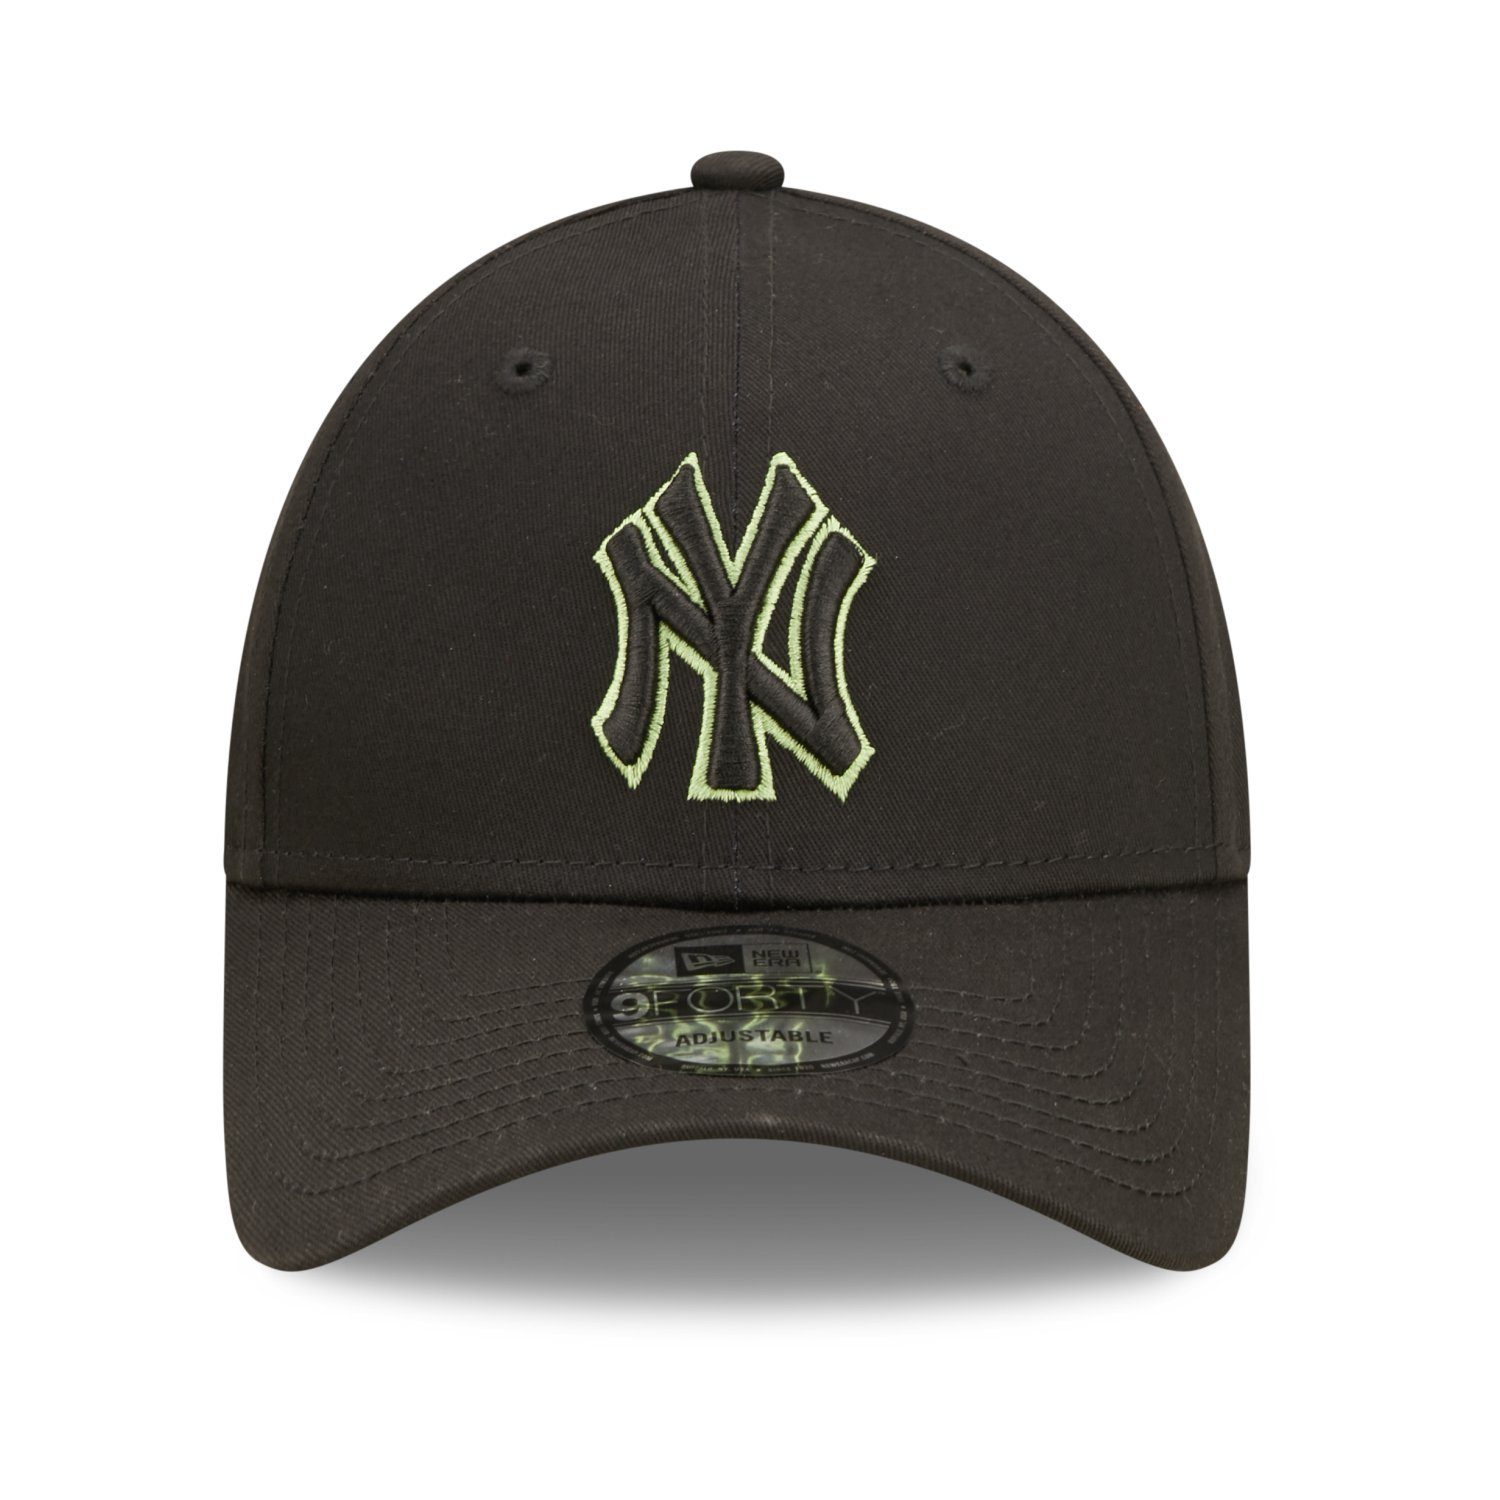 OUTLINE 9Forty Baseball New York New Strapback Cap Era Yankees